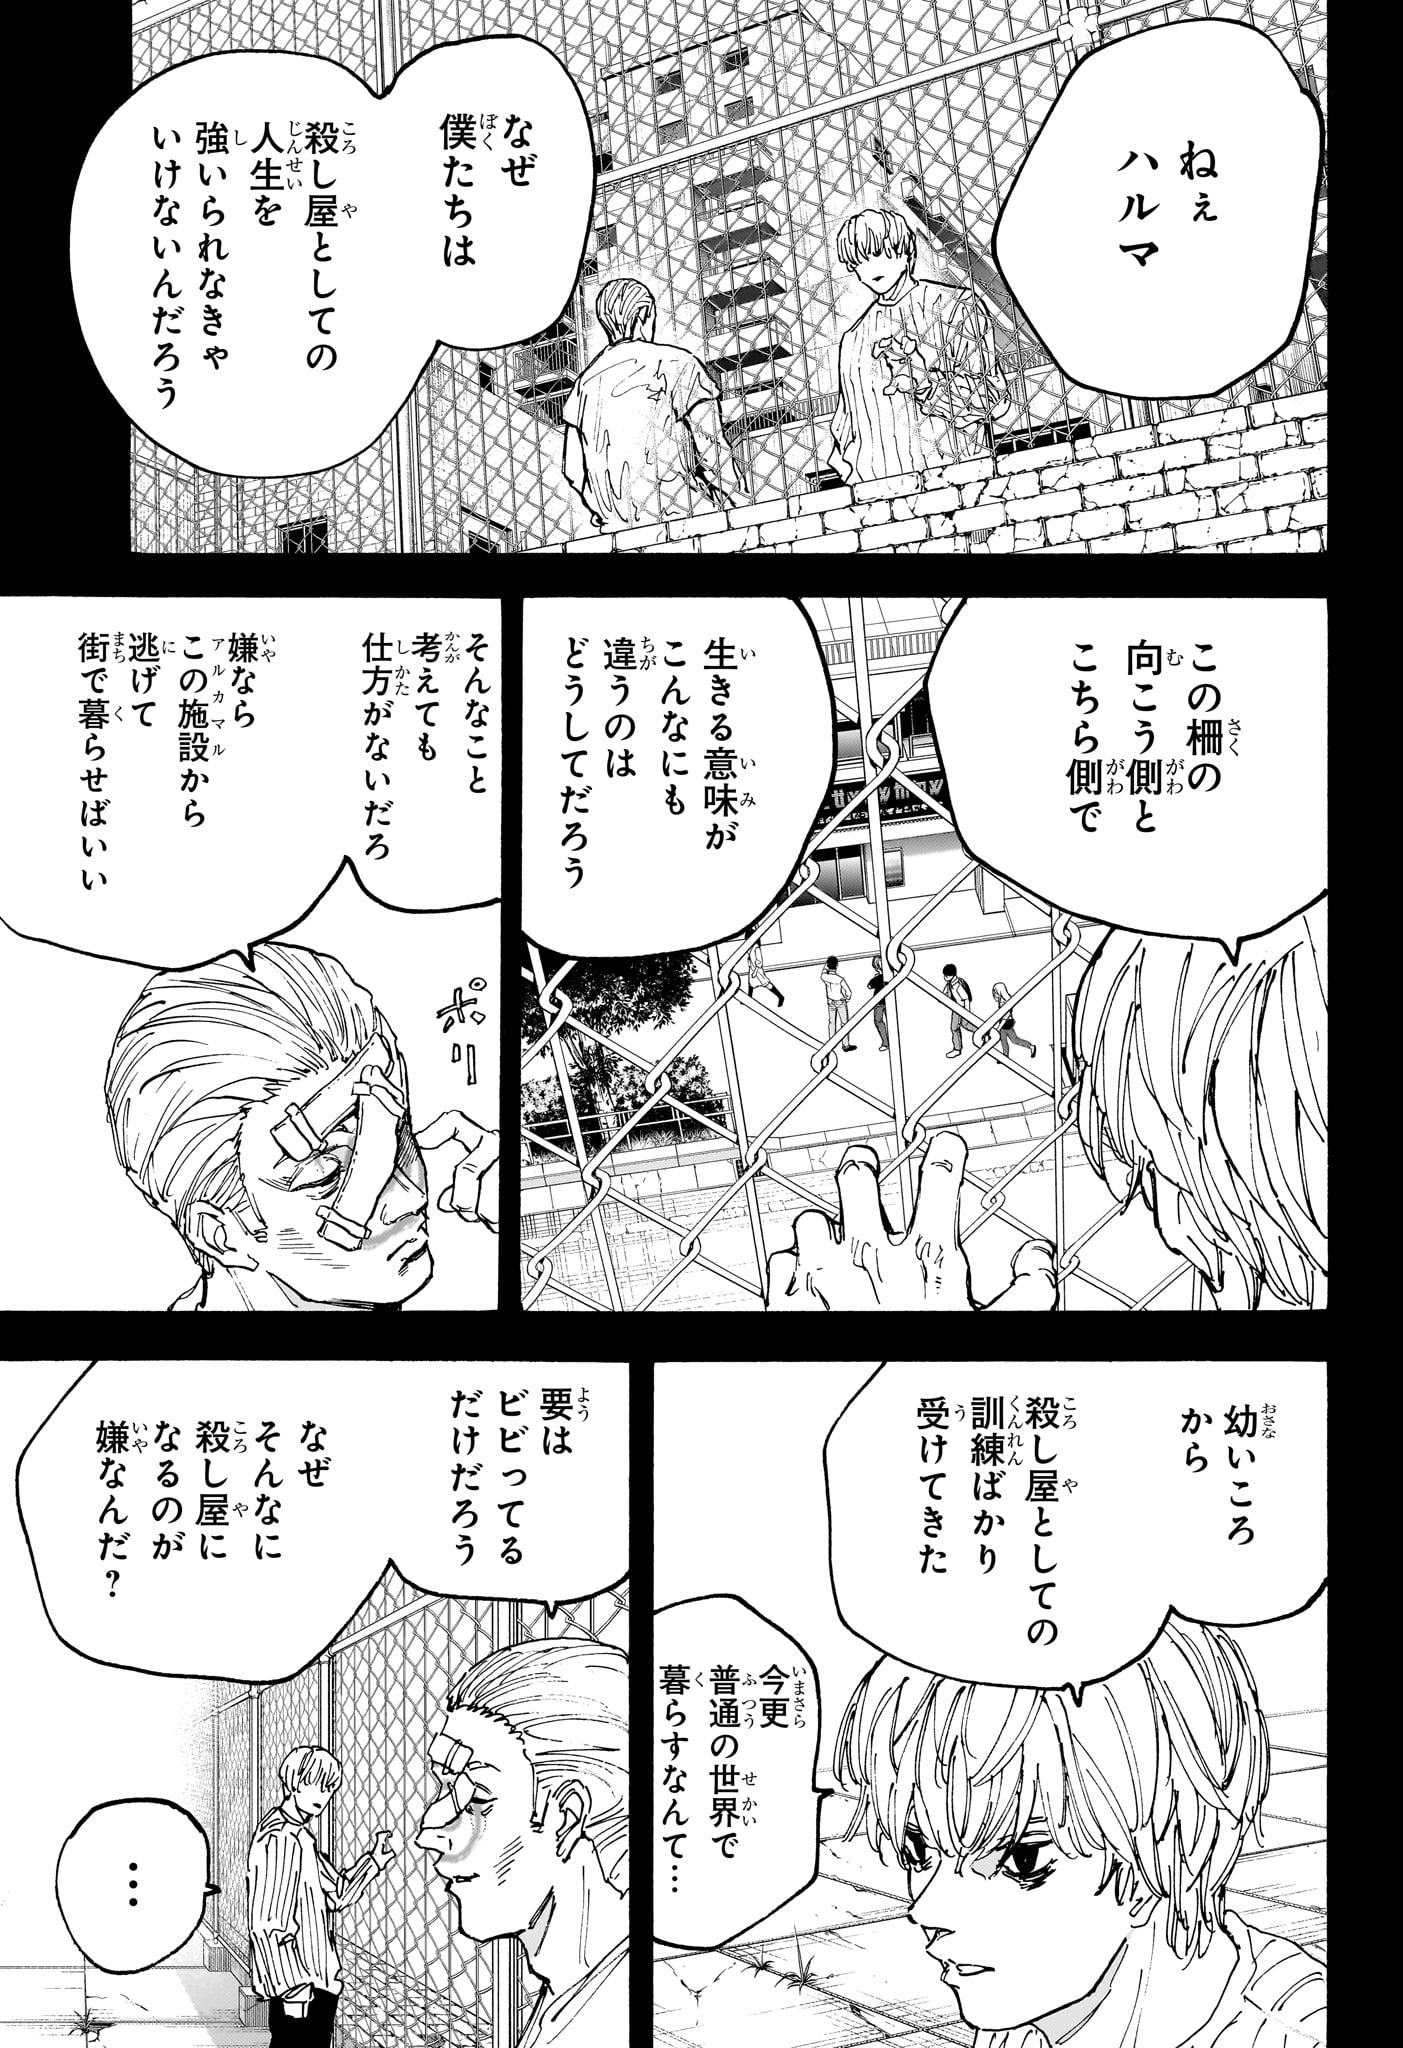 Sakamoto Days - Chapter 166 - Page 7